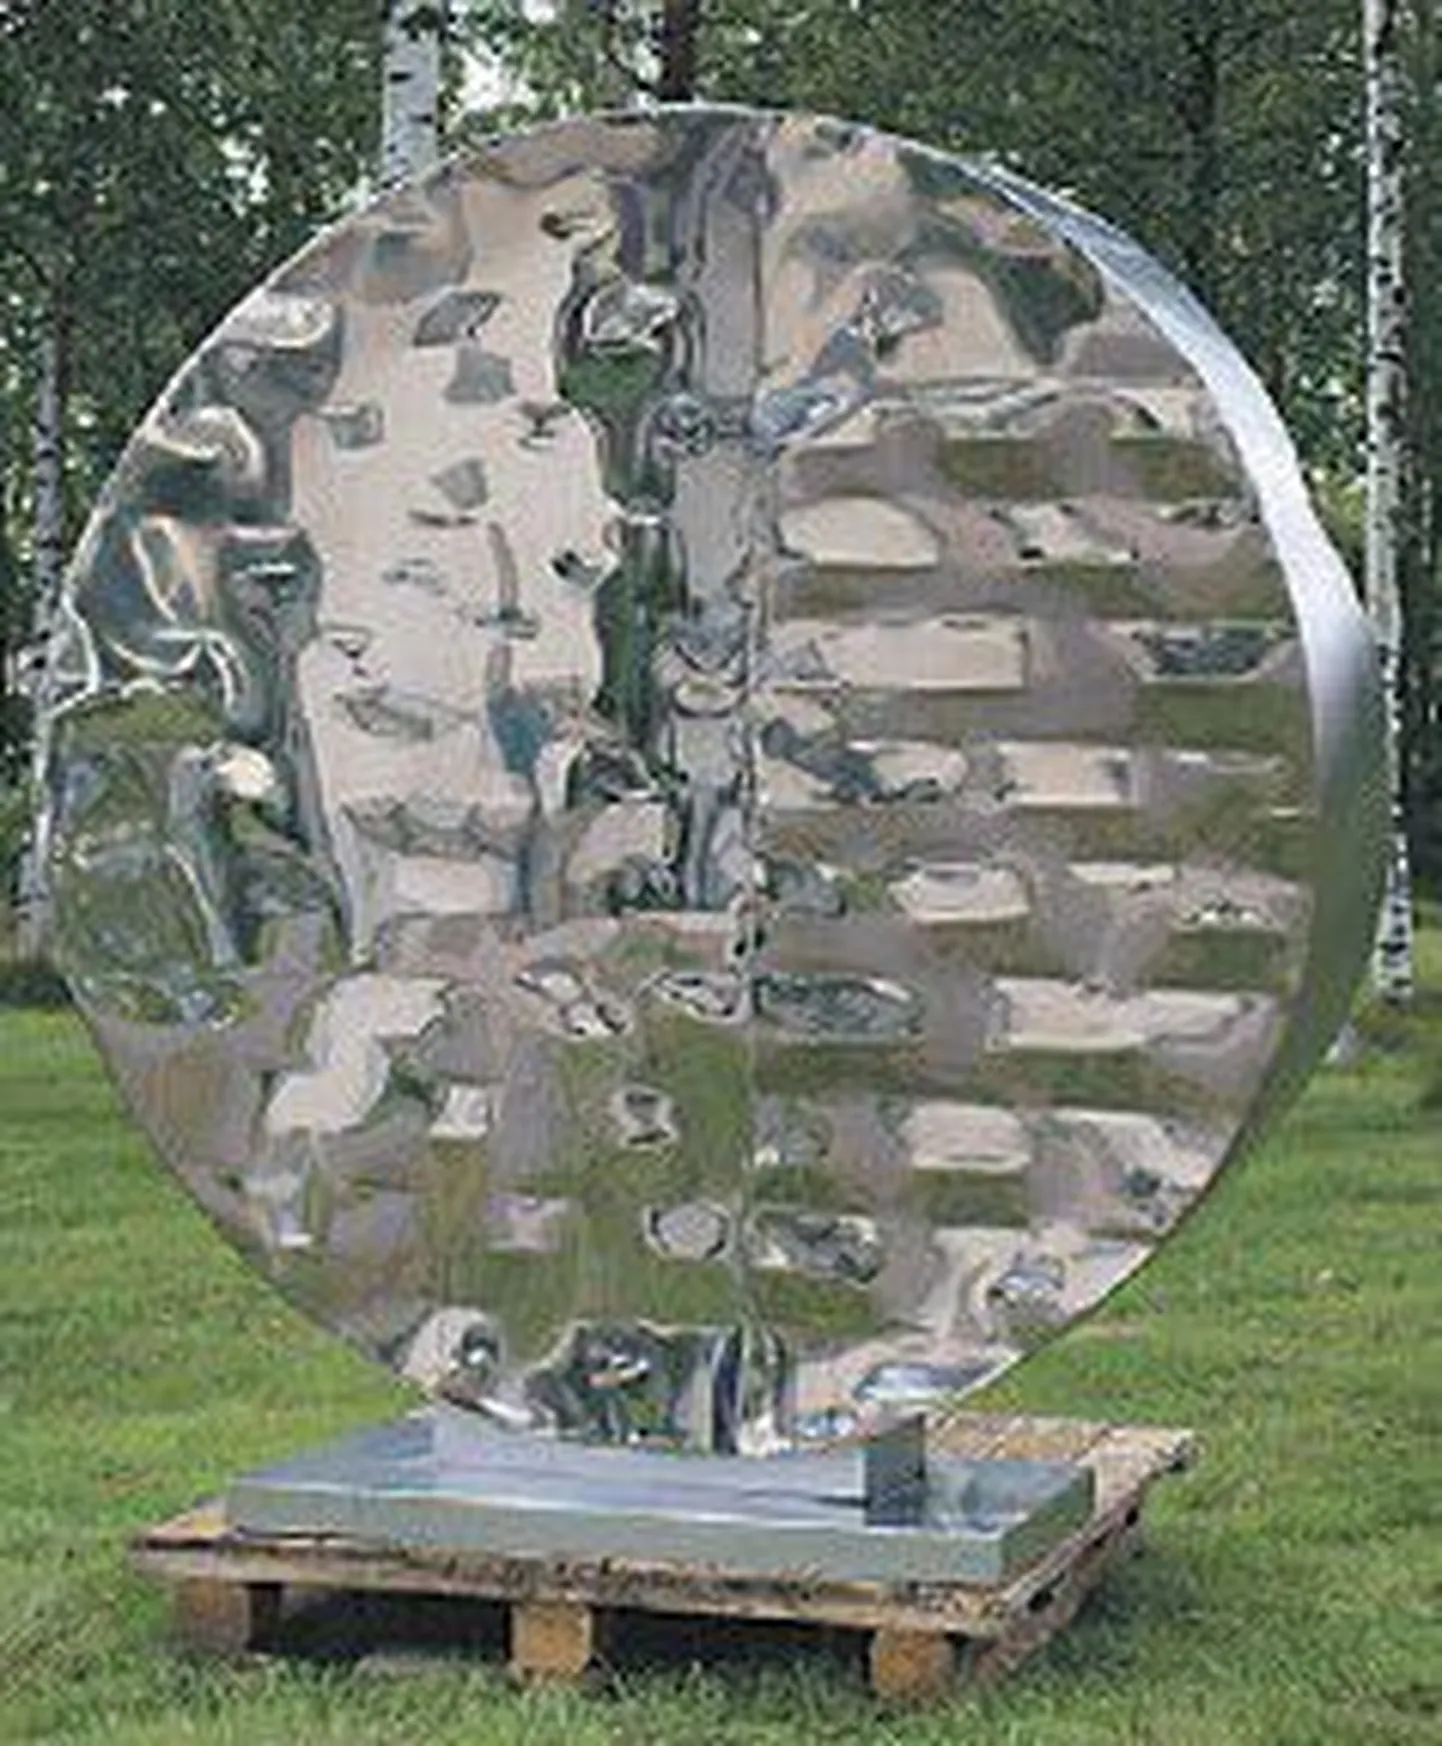 Ээро Хийронен во всех своих работах отдает дань природным стихиям, прежде всего воде. Эта скульптура так и называется «Вода».